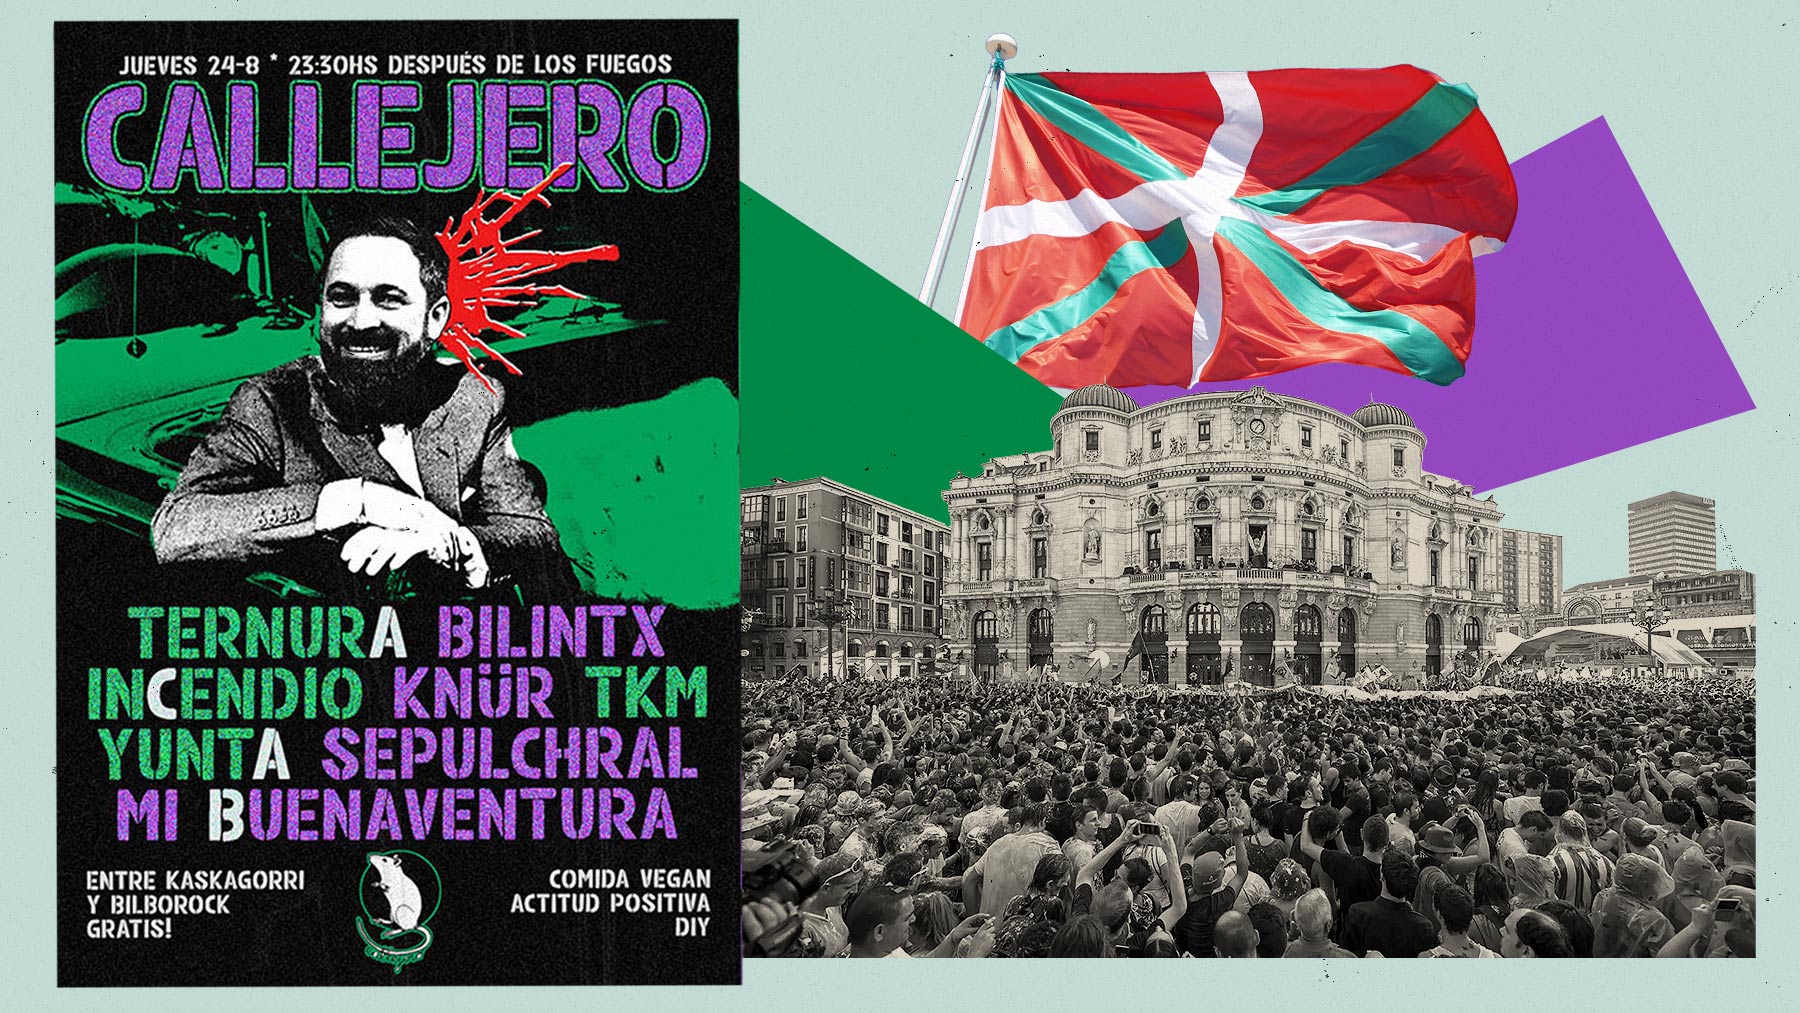 El cartel de las fiestas de Bilbao con Santiago Abascal.